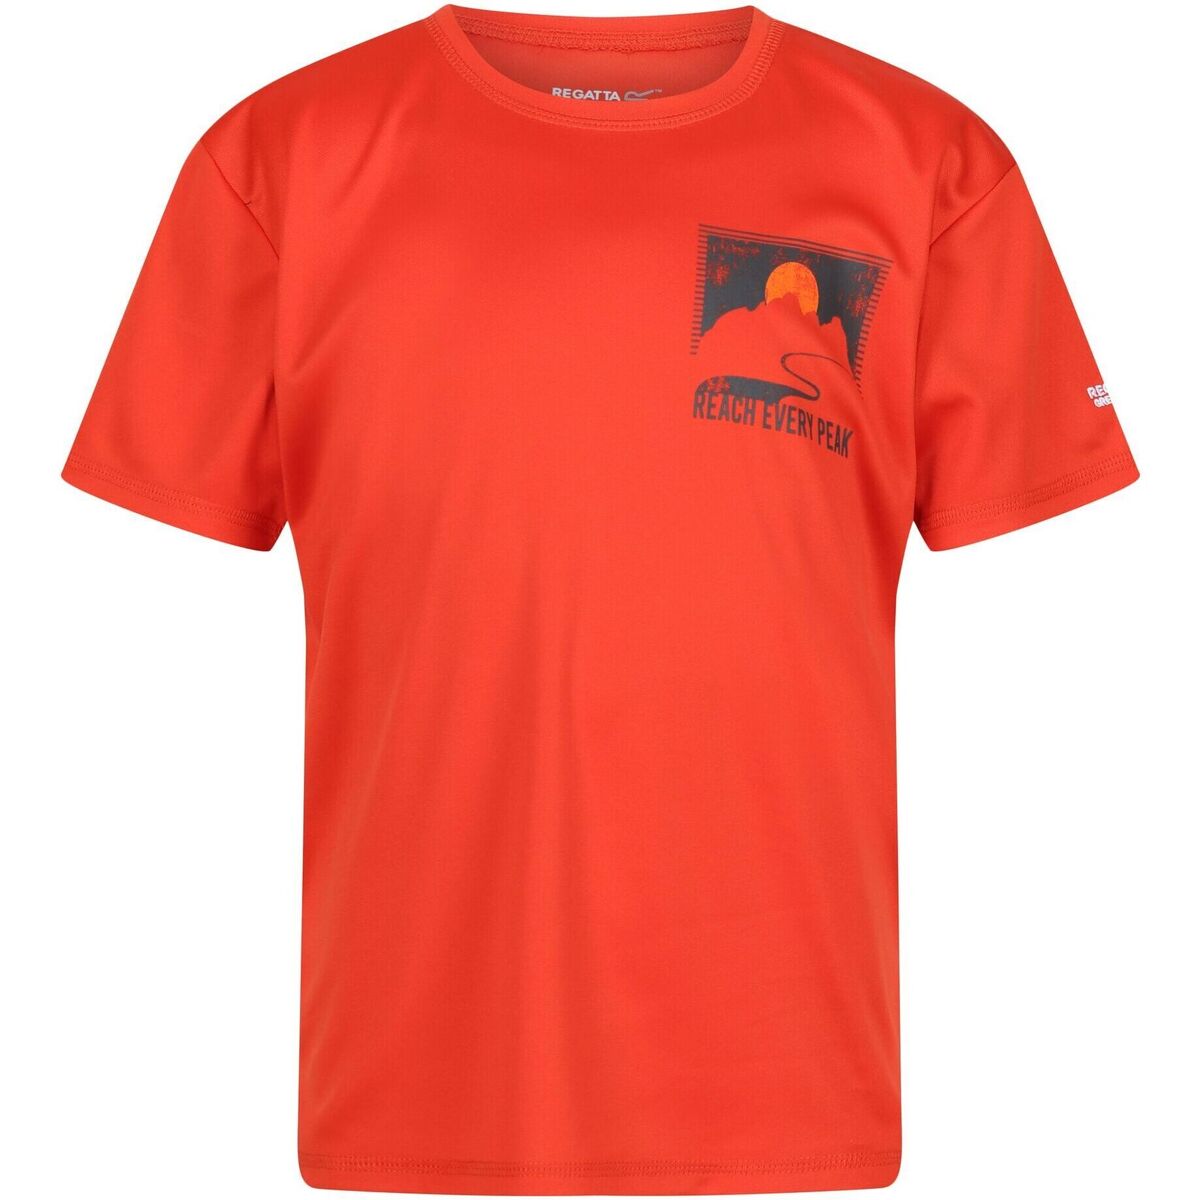 Abbigliamento Unisex bambino T-shirt maniche corte Regatta Alvarado VII Rosso